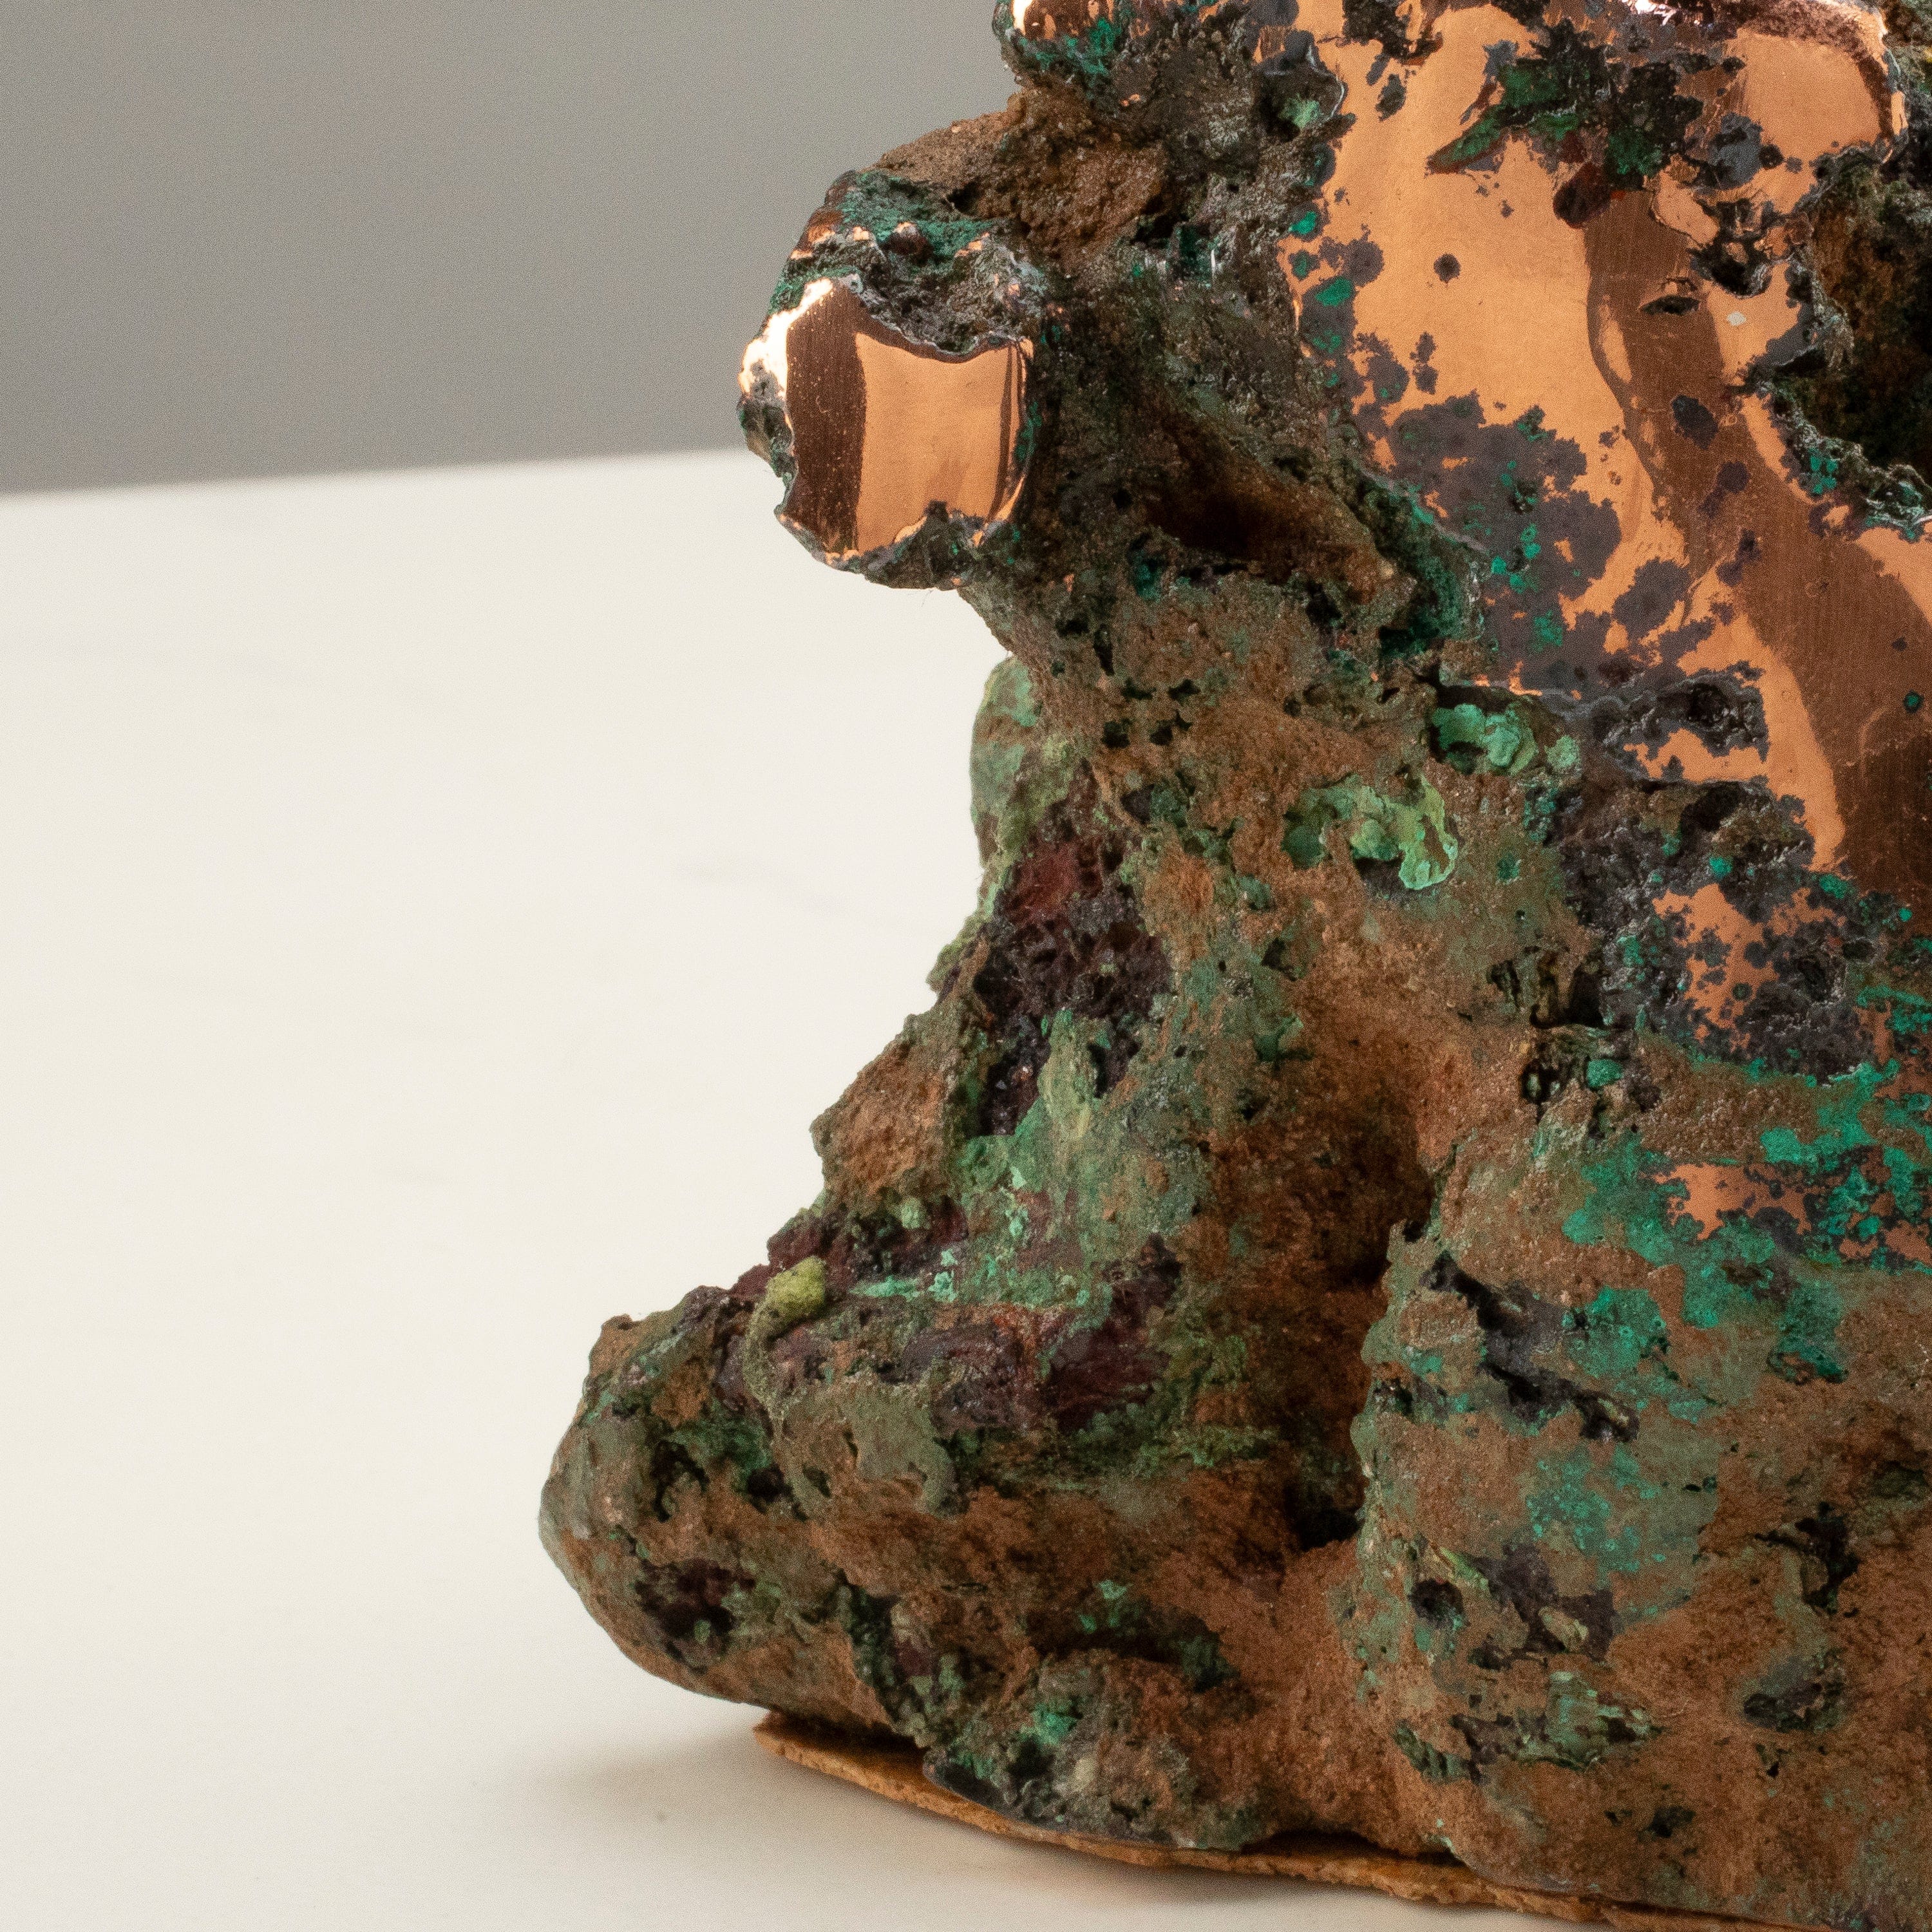 Kalifano Copper Copper Butchite from Michigan - 5" / 5.4lbs CPR1200.002